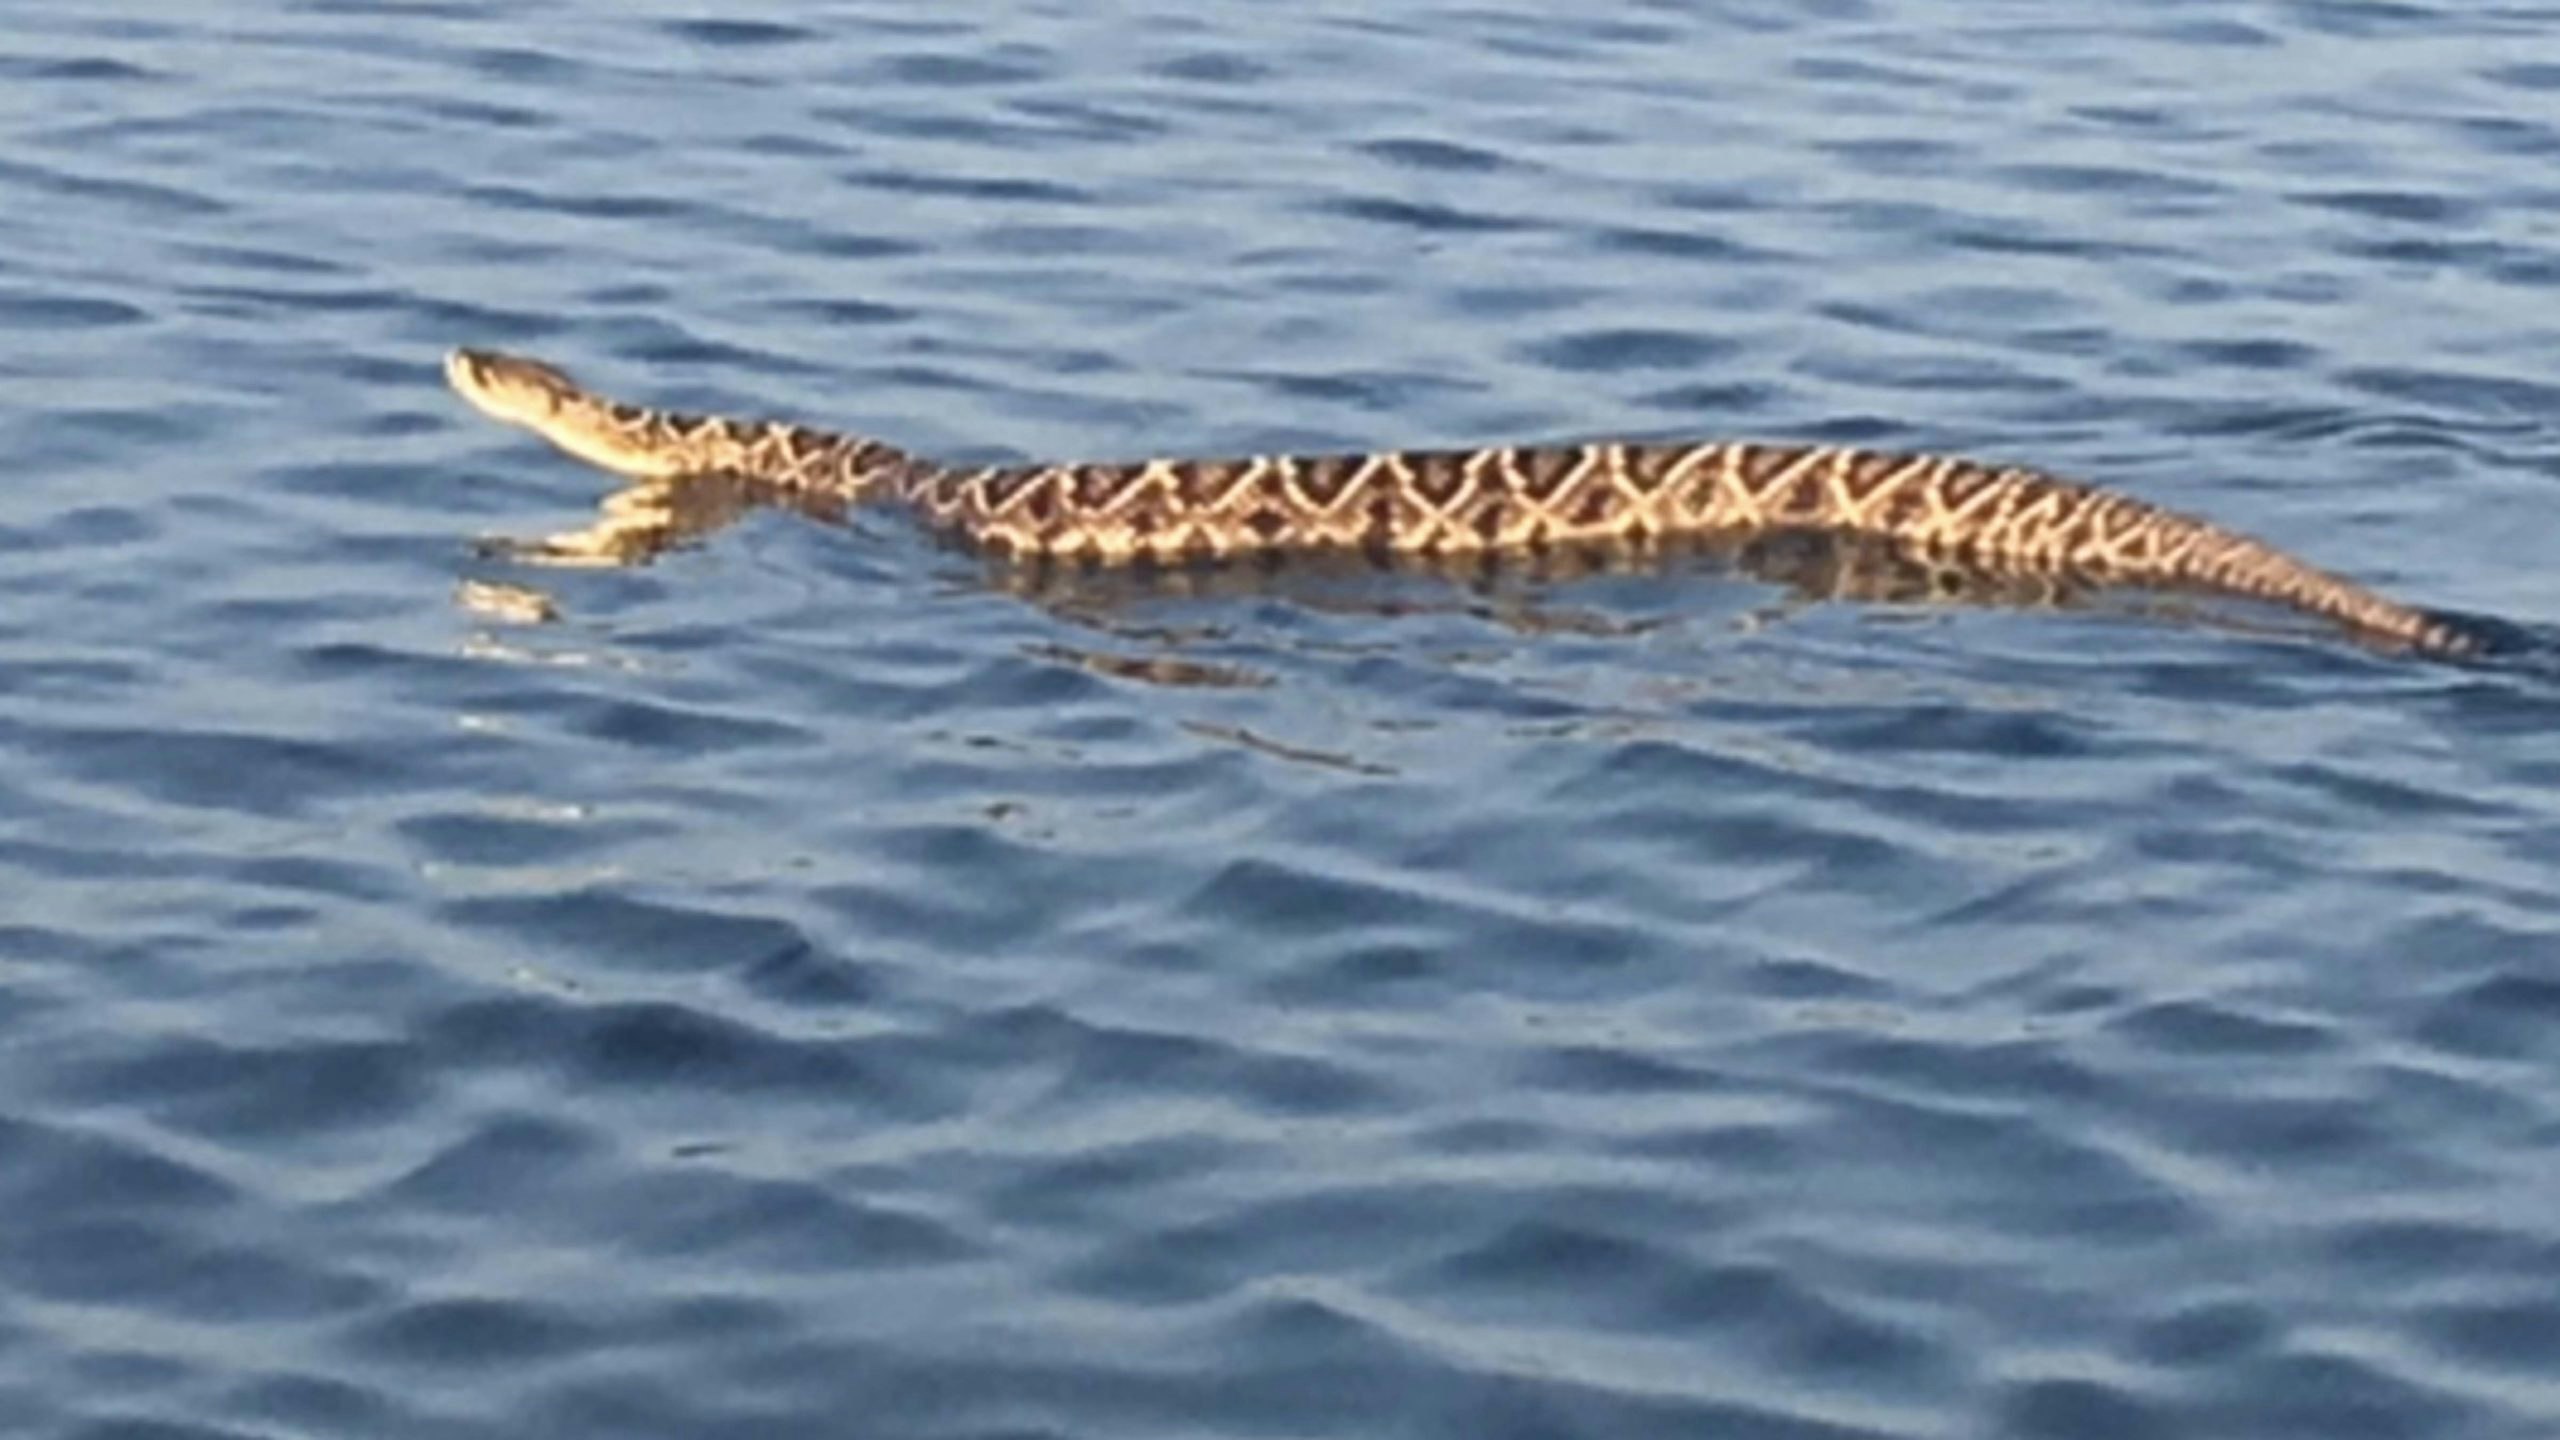 Rattlesnake swim 7 20 22 scaled